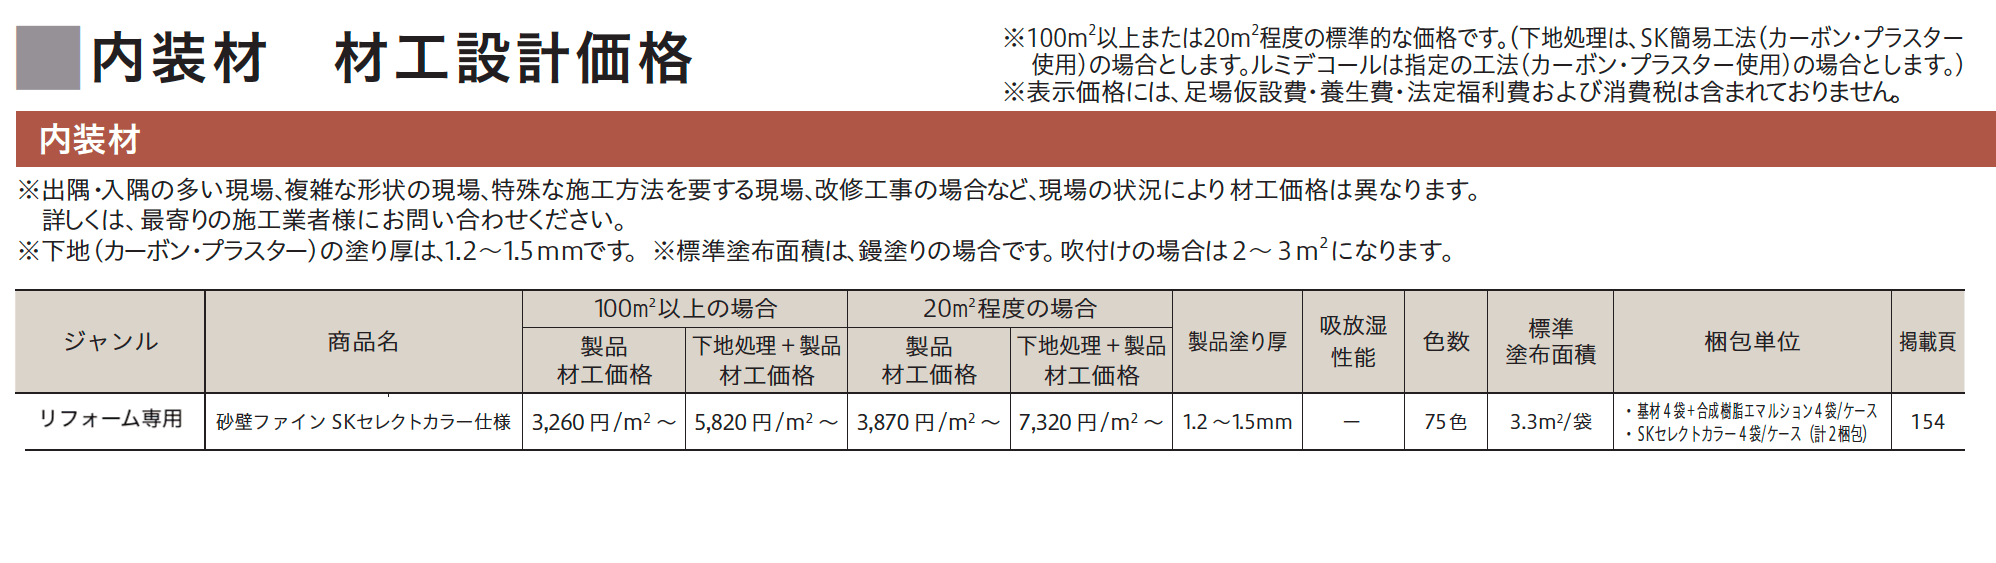 砂壁ファイン SKセレクトカラー仕様【2023年版】_価格_1